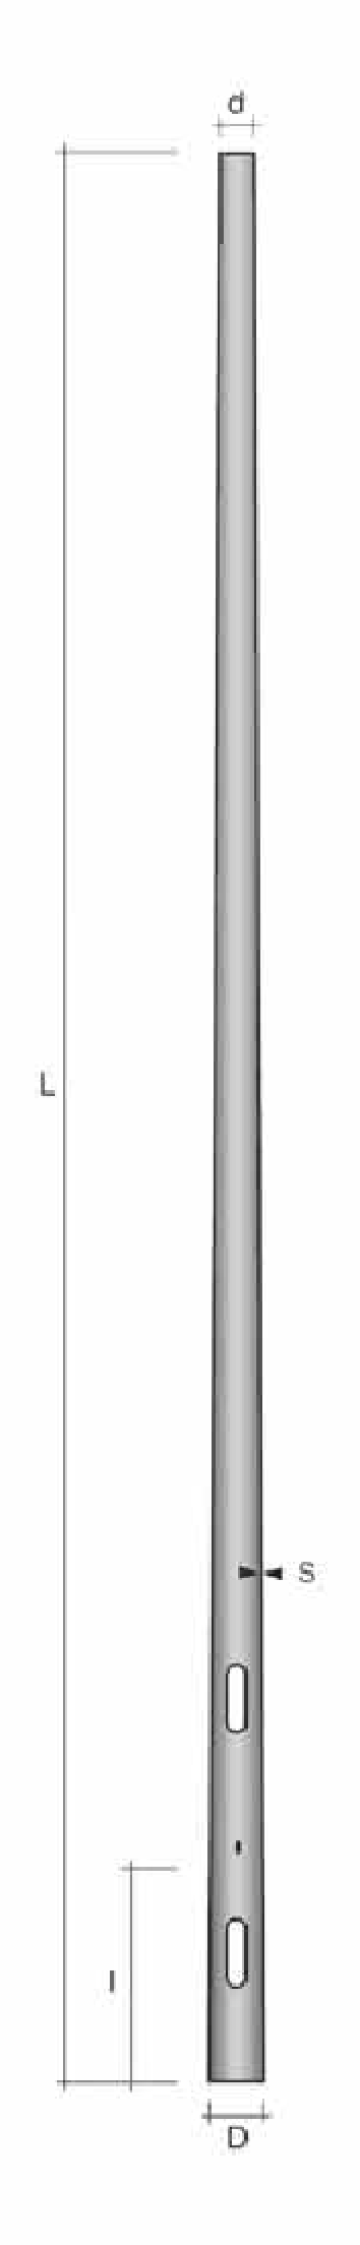 Stalp conic ingropat h=10.8m de la Metalsafe Lighting Srl